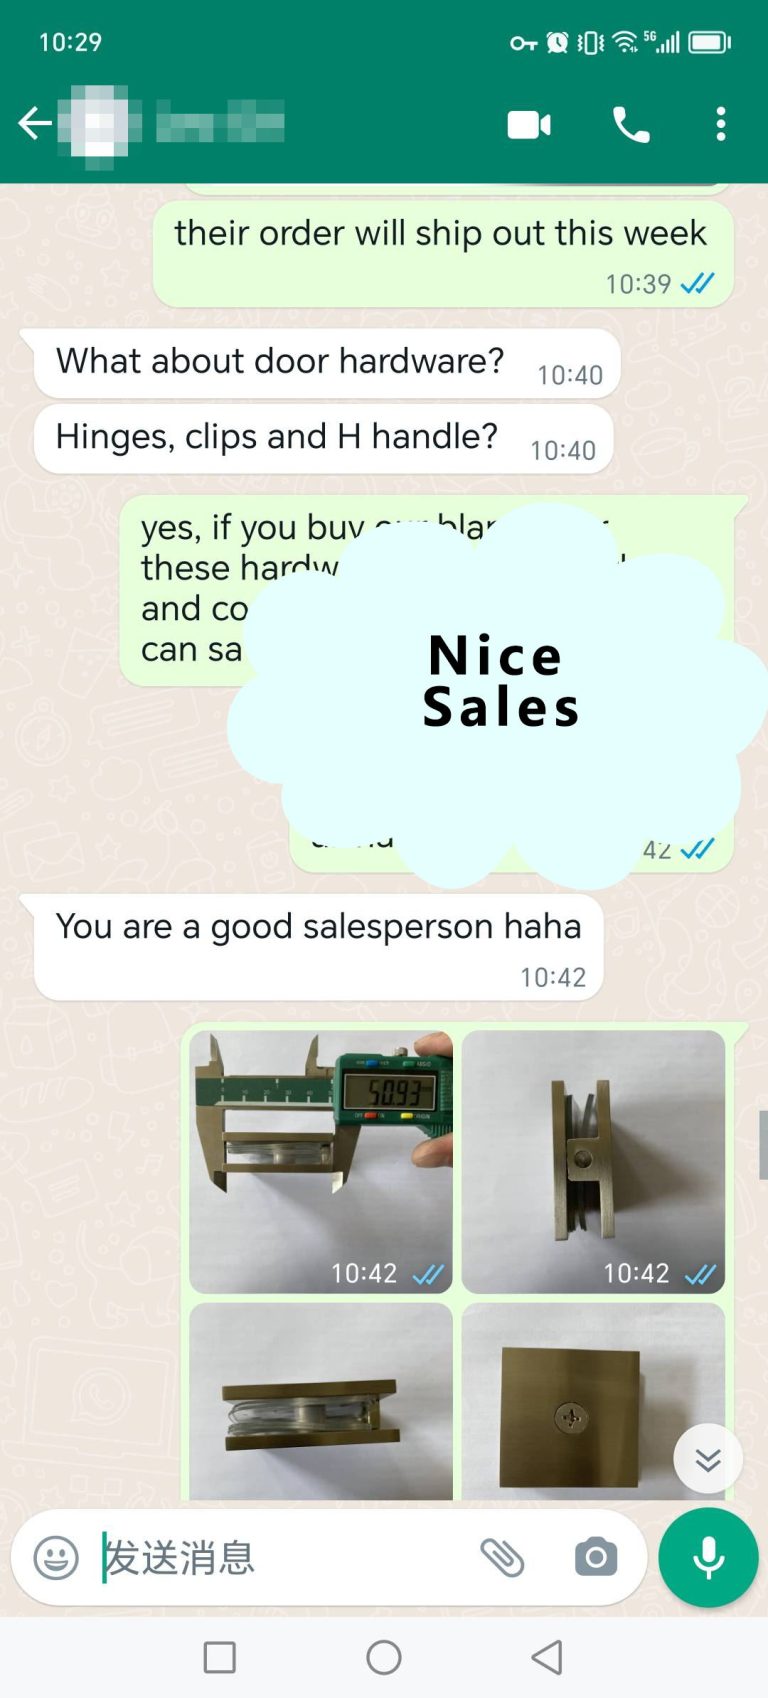 Nice sales